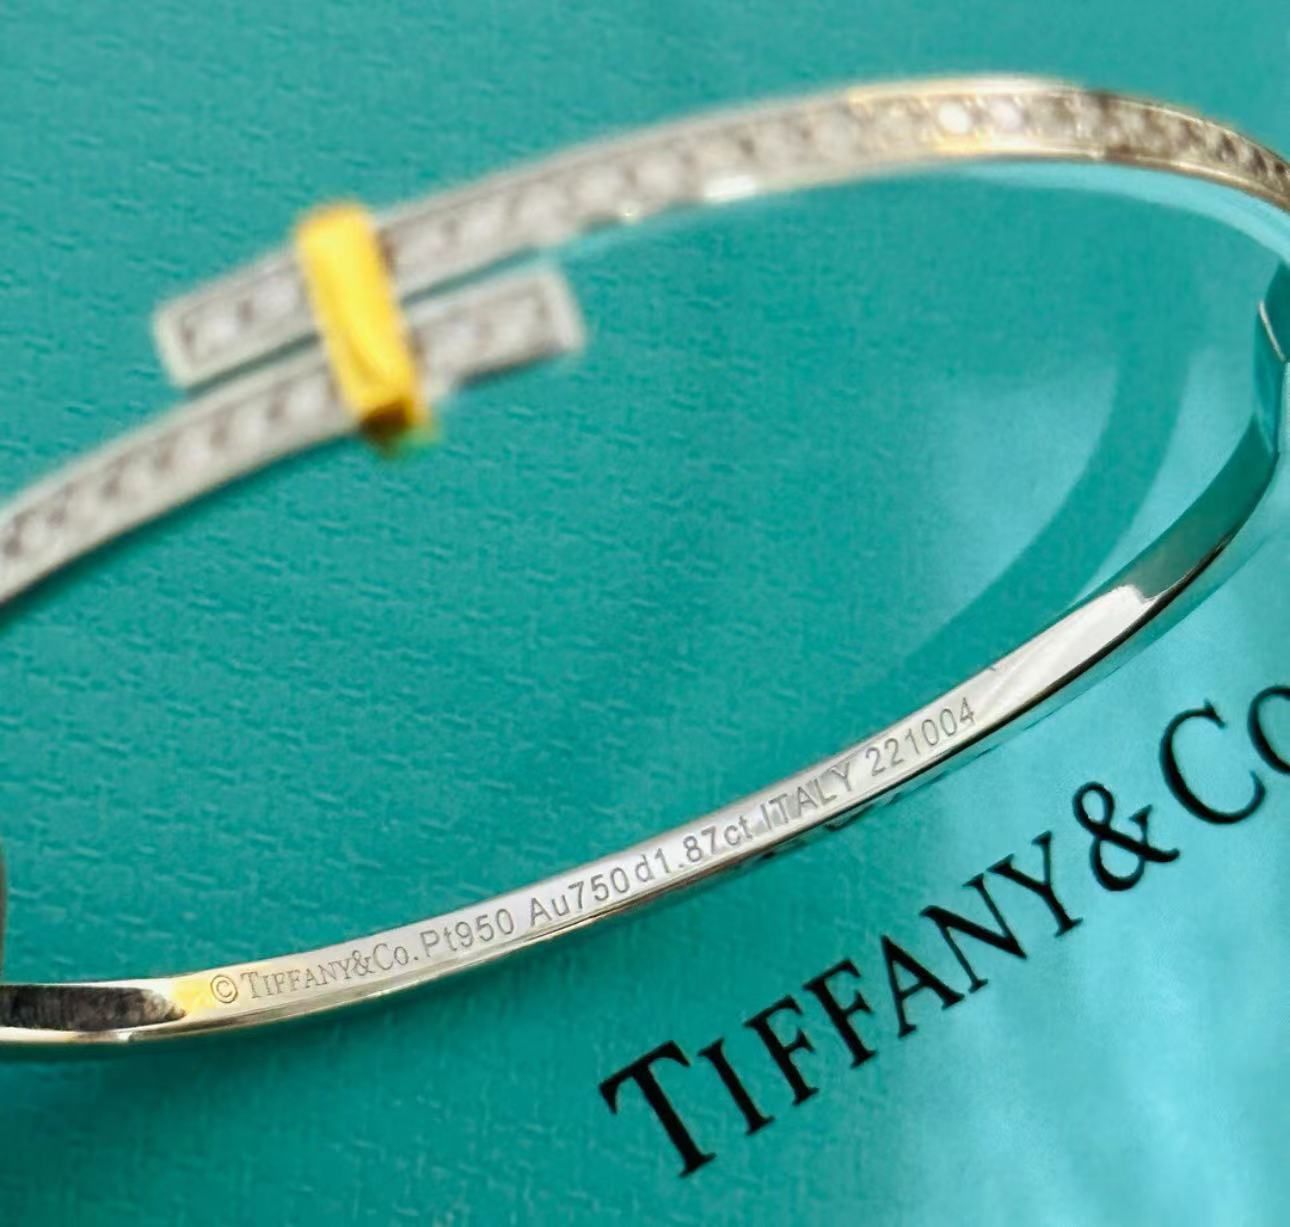 Tiffany エッジシリーズ プラチナと18Kゴールド ダイヤモンド ブレスレット